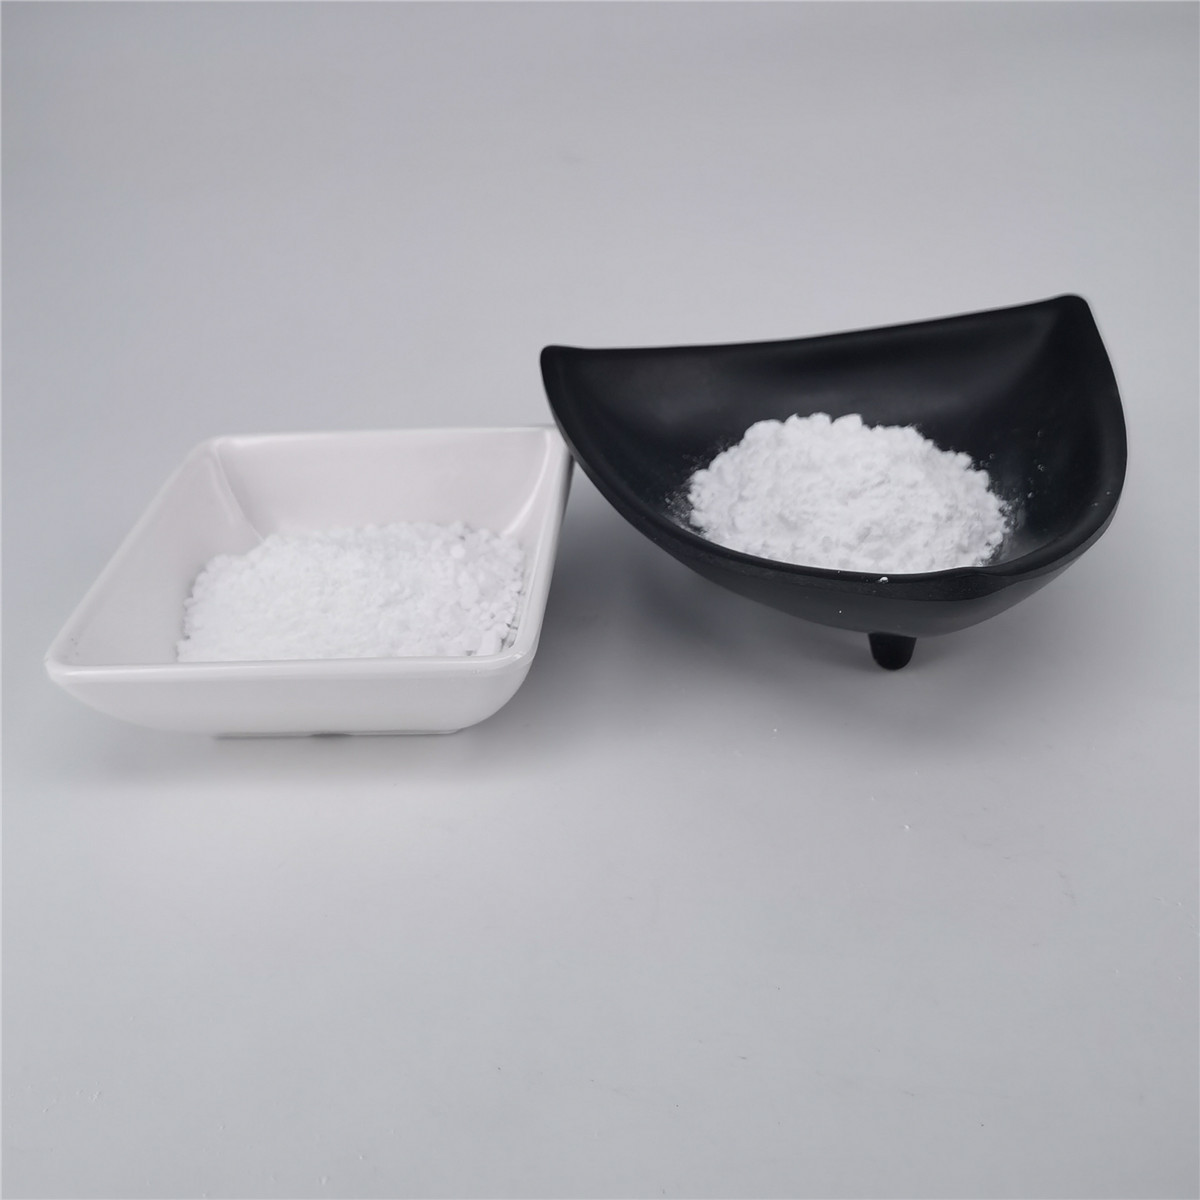  White L Ergothioneine Powder 207-843-5 Work As Cell Preservation Manufactures